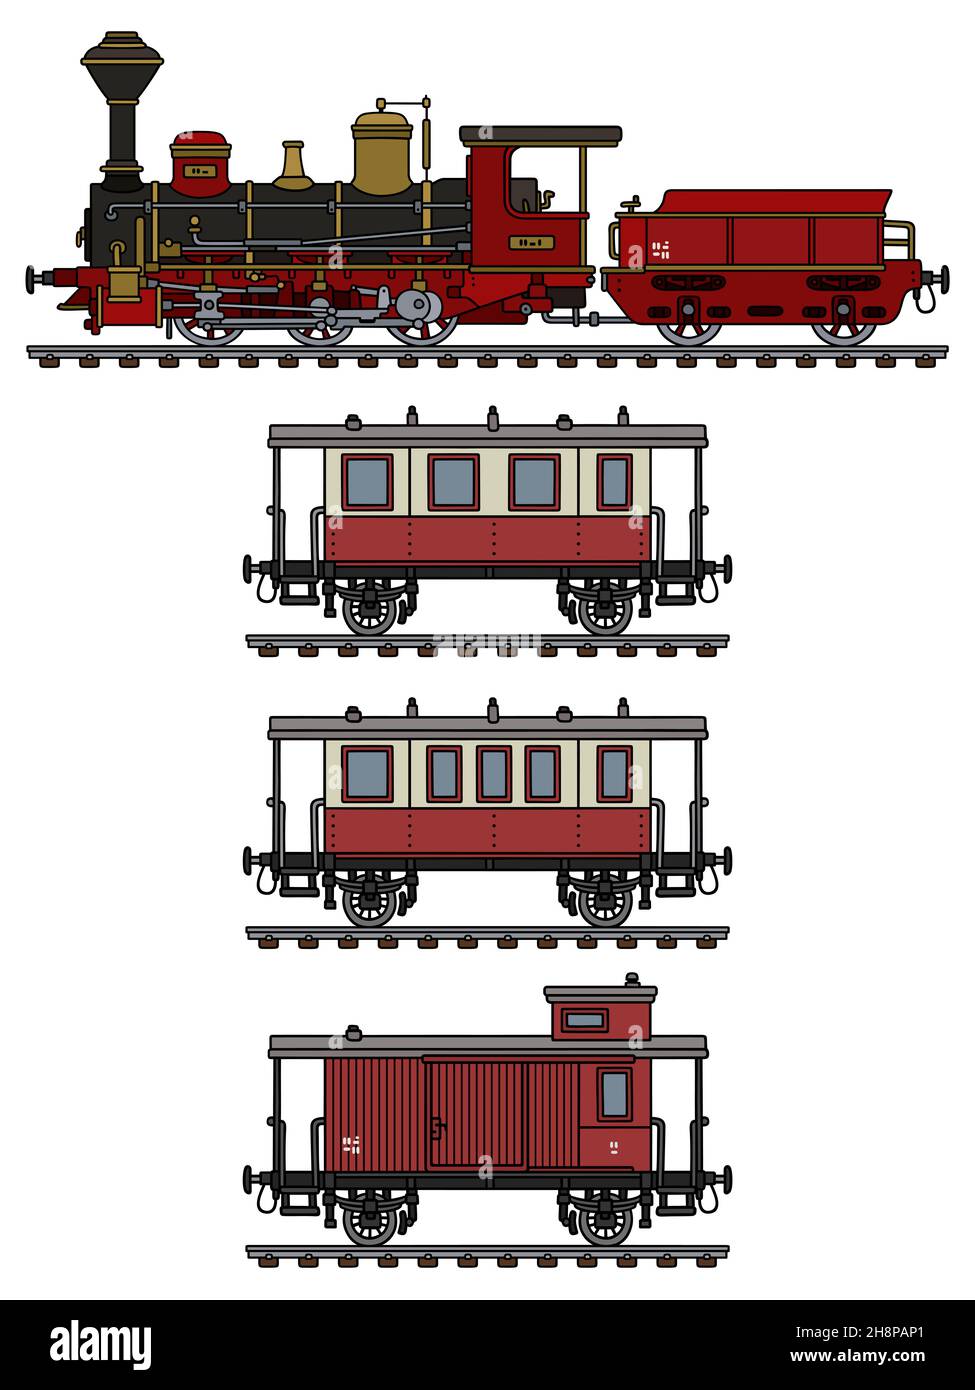 Handzeichnung einer alten roten Dampfeisenbahn Stockfoto